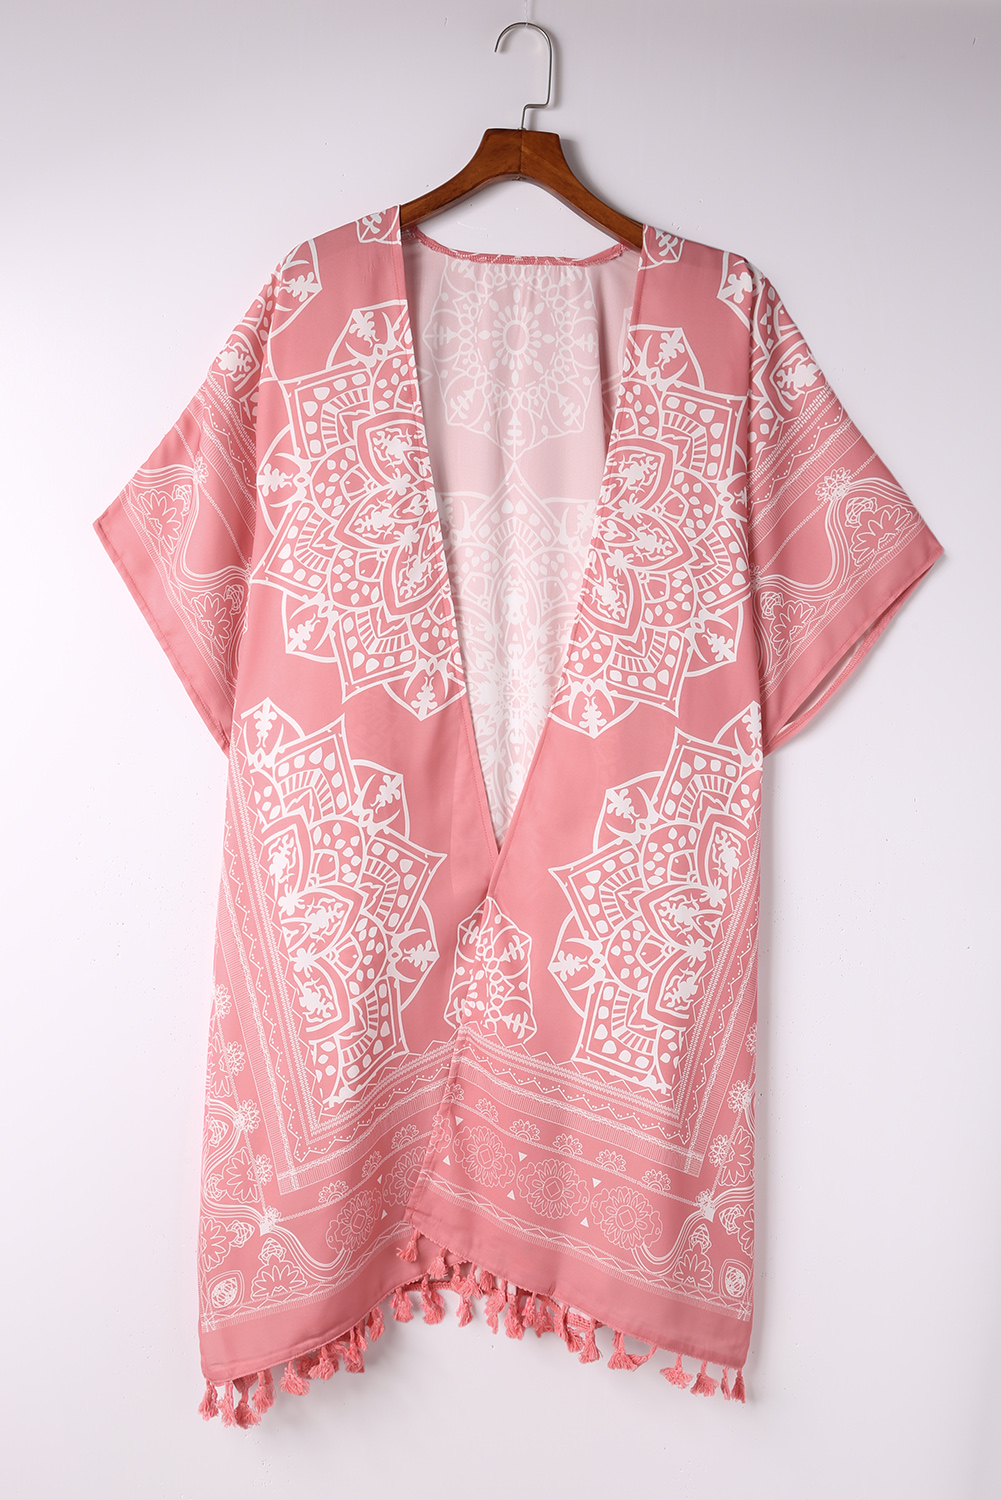 Brown Tassel Kimono - Swimsuits - Uniqistic.com